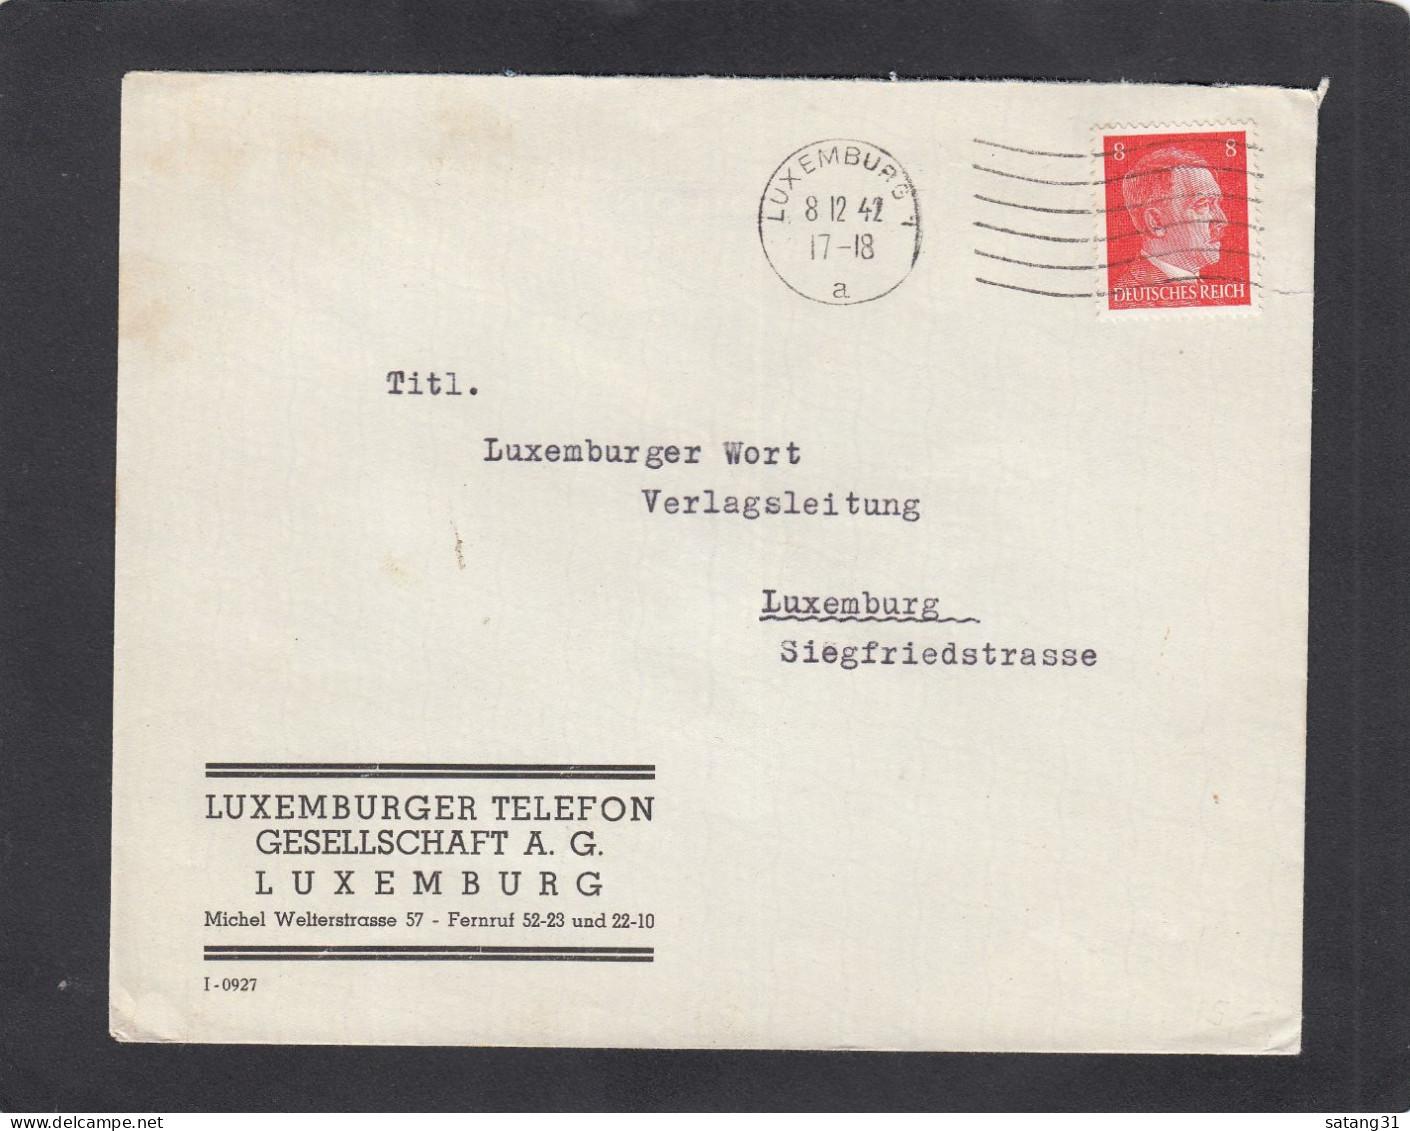 LUXEMBURGER TELEFON GESELLSCHAFT A.G., LUXEMBURG. - 1940-1944 Occupazione Tedesca